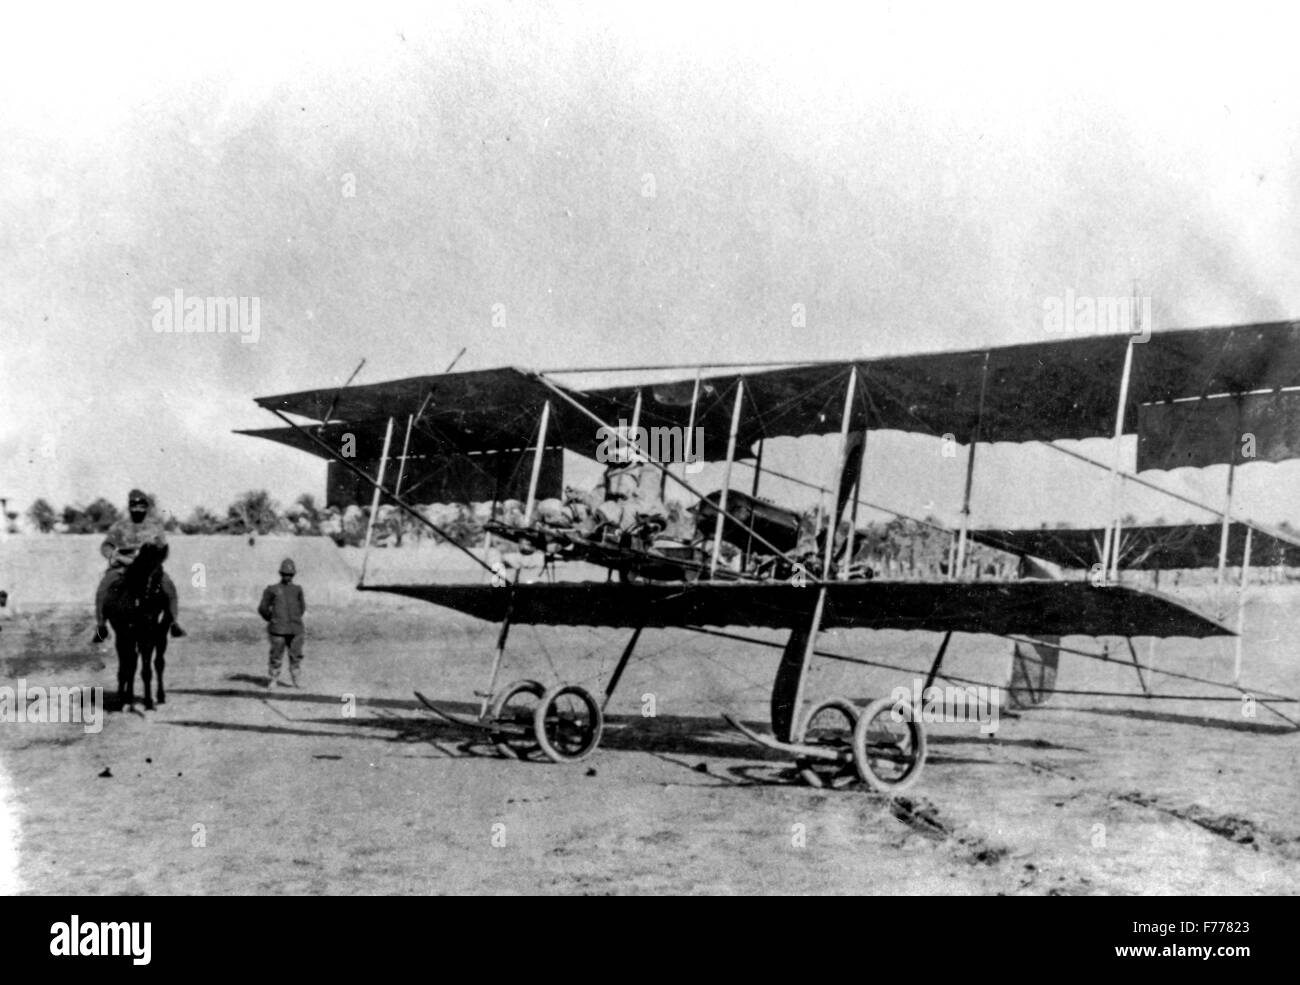 Trípoli, Libia,el avión farman mf.7,1913 Foto de stock